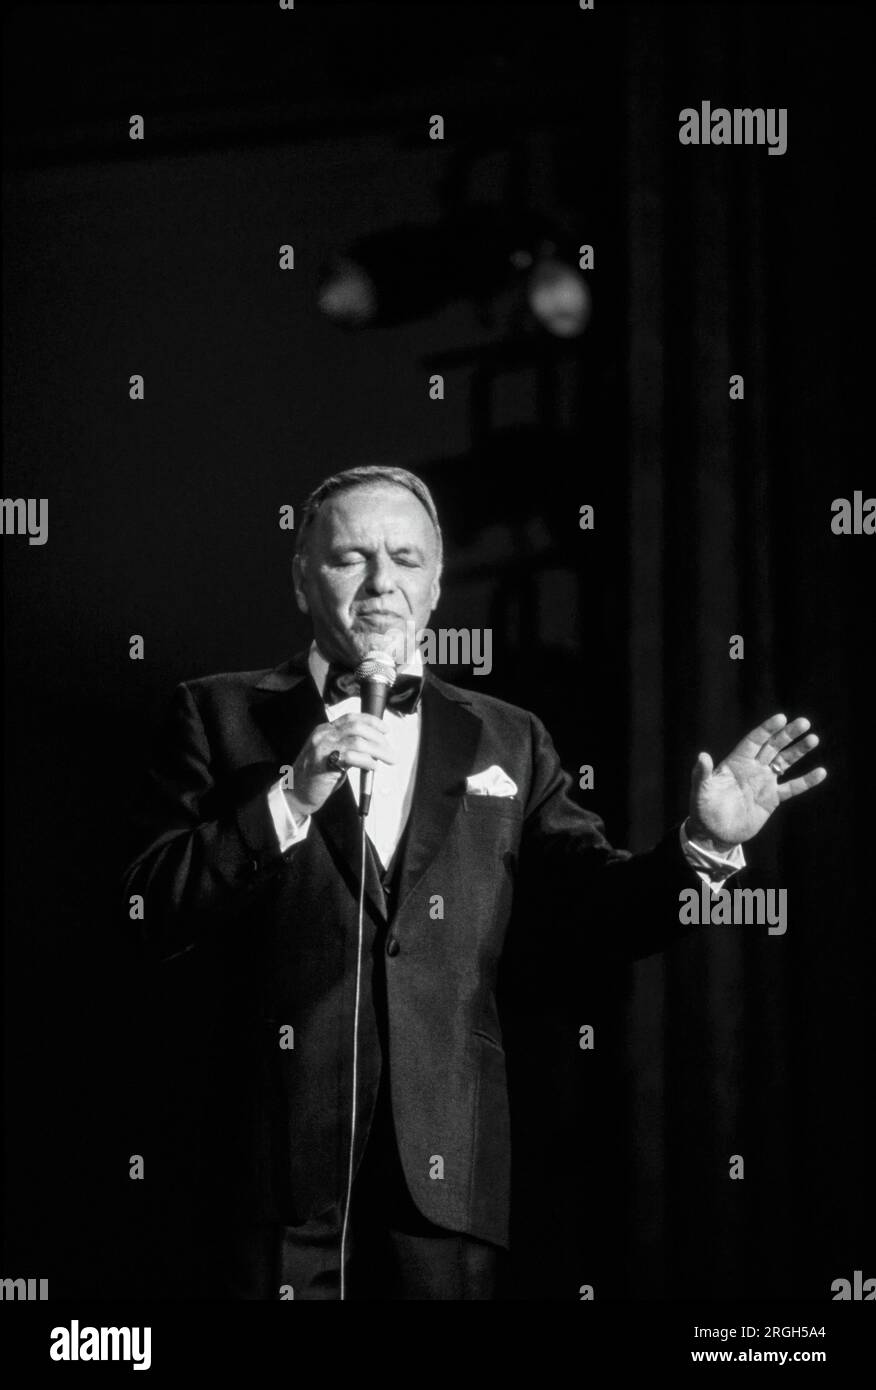 Frank Sinatra en performance, 1982. Photographie de Bernard Gotfryd . Francis Albert Sinatra était un chanteur et acteur américain. Surnommé le «président du conseil d'administration» et plus tard appelé «Ol' Blue Eyes», il est considéré comme l'un des artistes les plus populaires du milieu du 20e siècle. Sinatra est parmi les artistes musicaux les plus vendus au monde avec environ 150 millions de ventes de disques. Né d'immigrants italiens à Hoboken, New Jersey, Sinatra a commencé sa carrière musicale à l'ère du swing. Banque D'Images